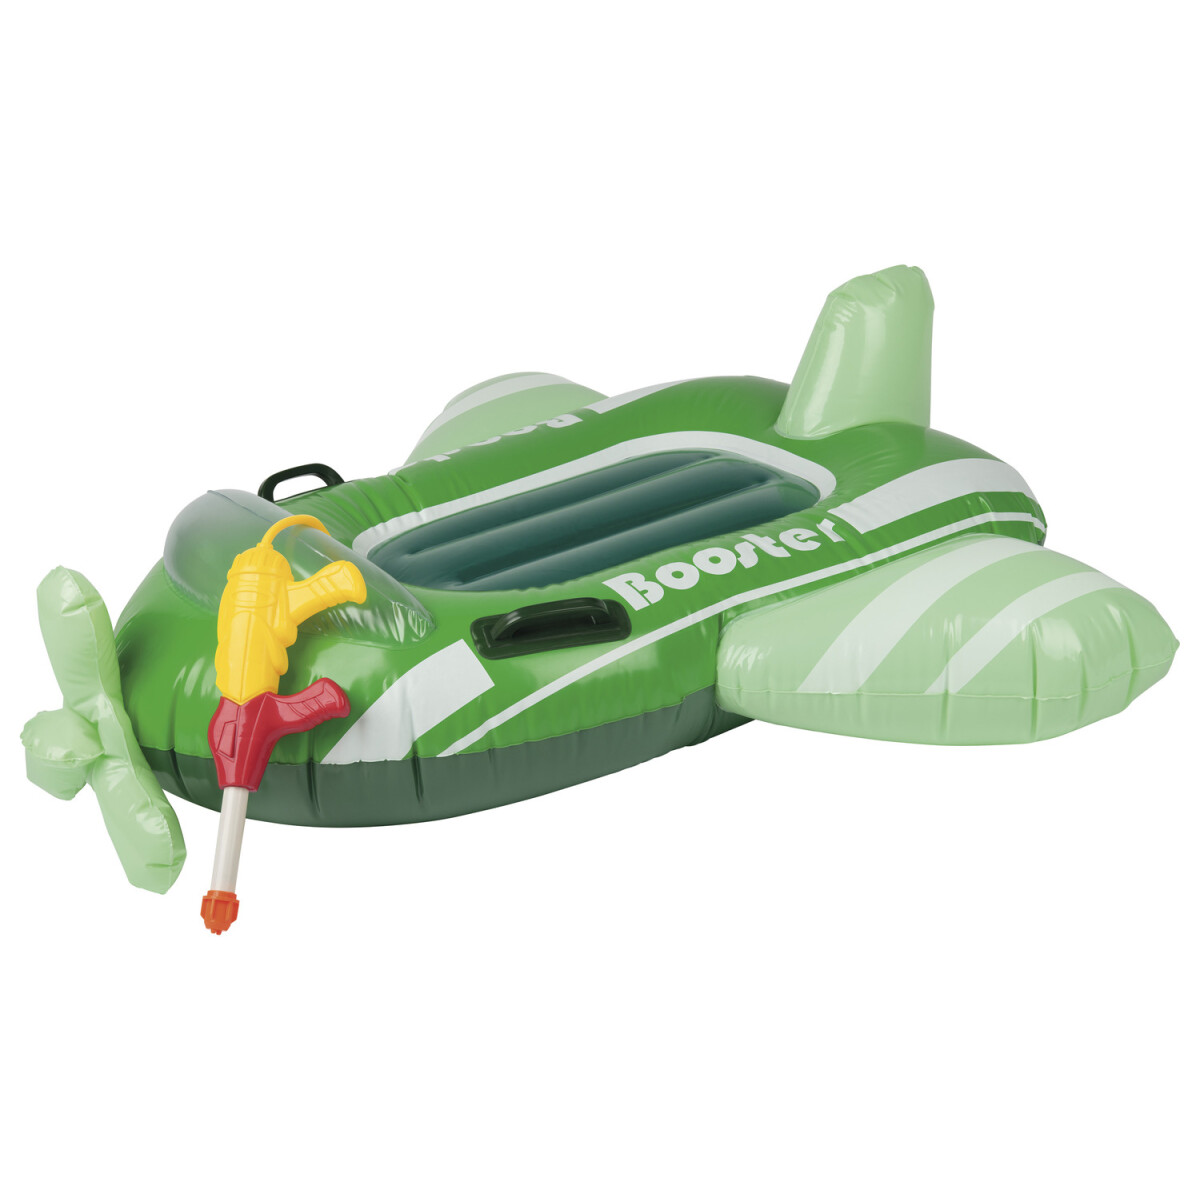 Playtive Kinder Sitzboote, aufblasbar, mit Wasserspritzpistole (Flugzeug) -  B-Ware neuwertig, 12,99 €